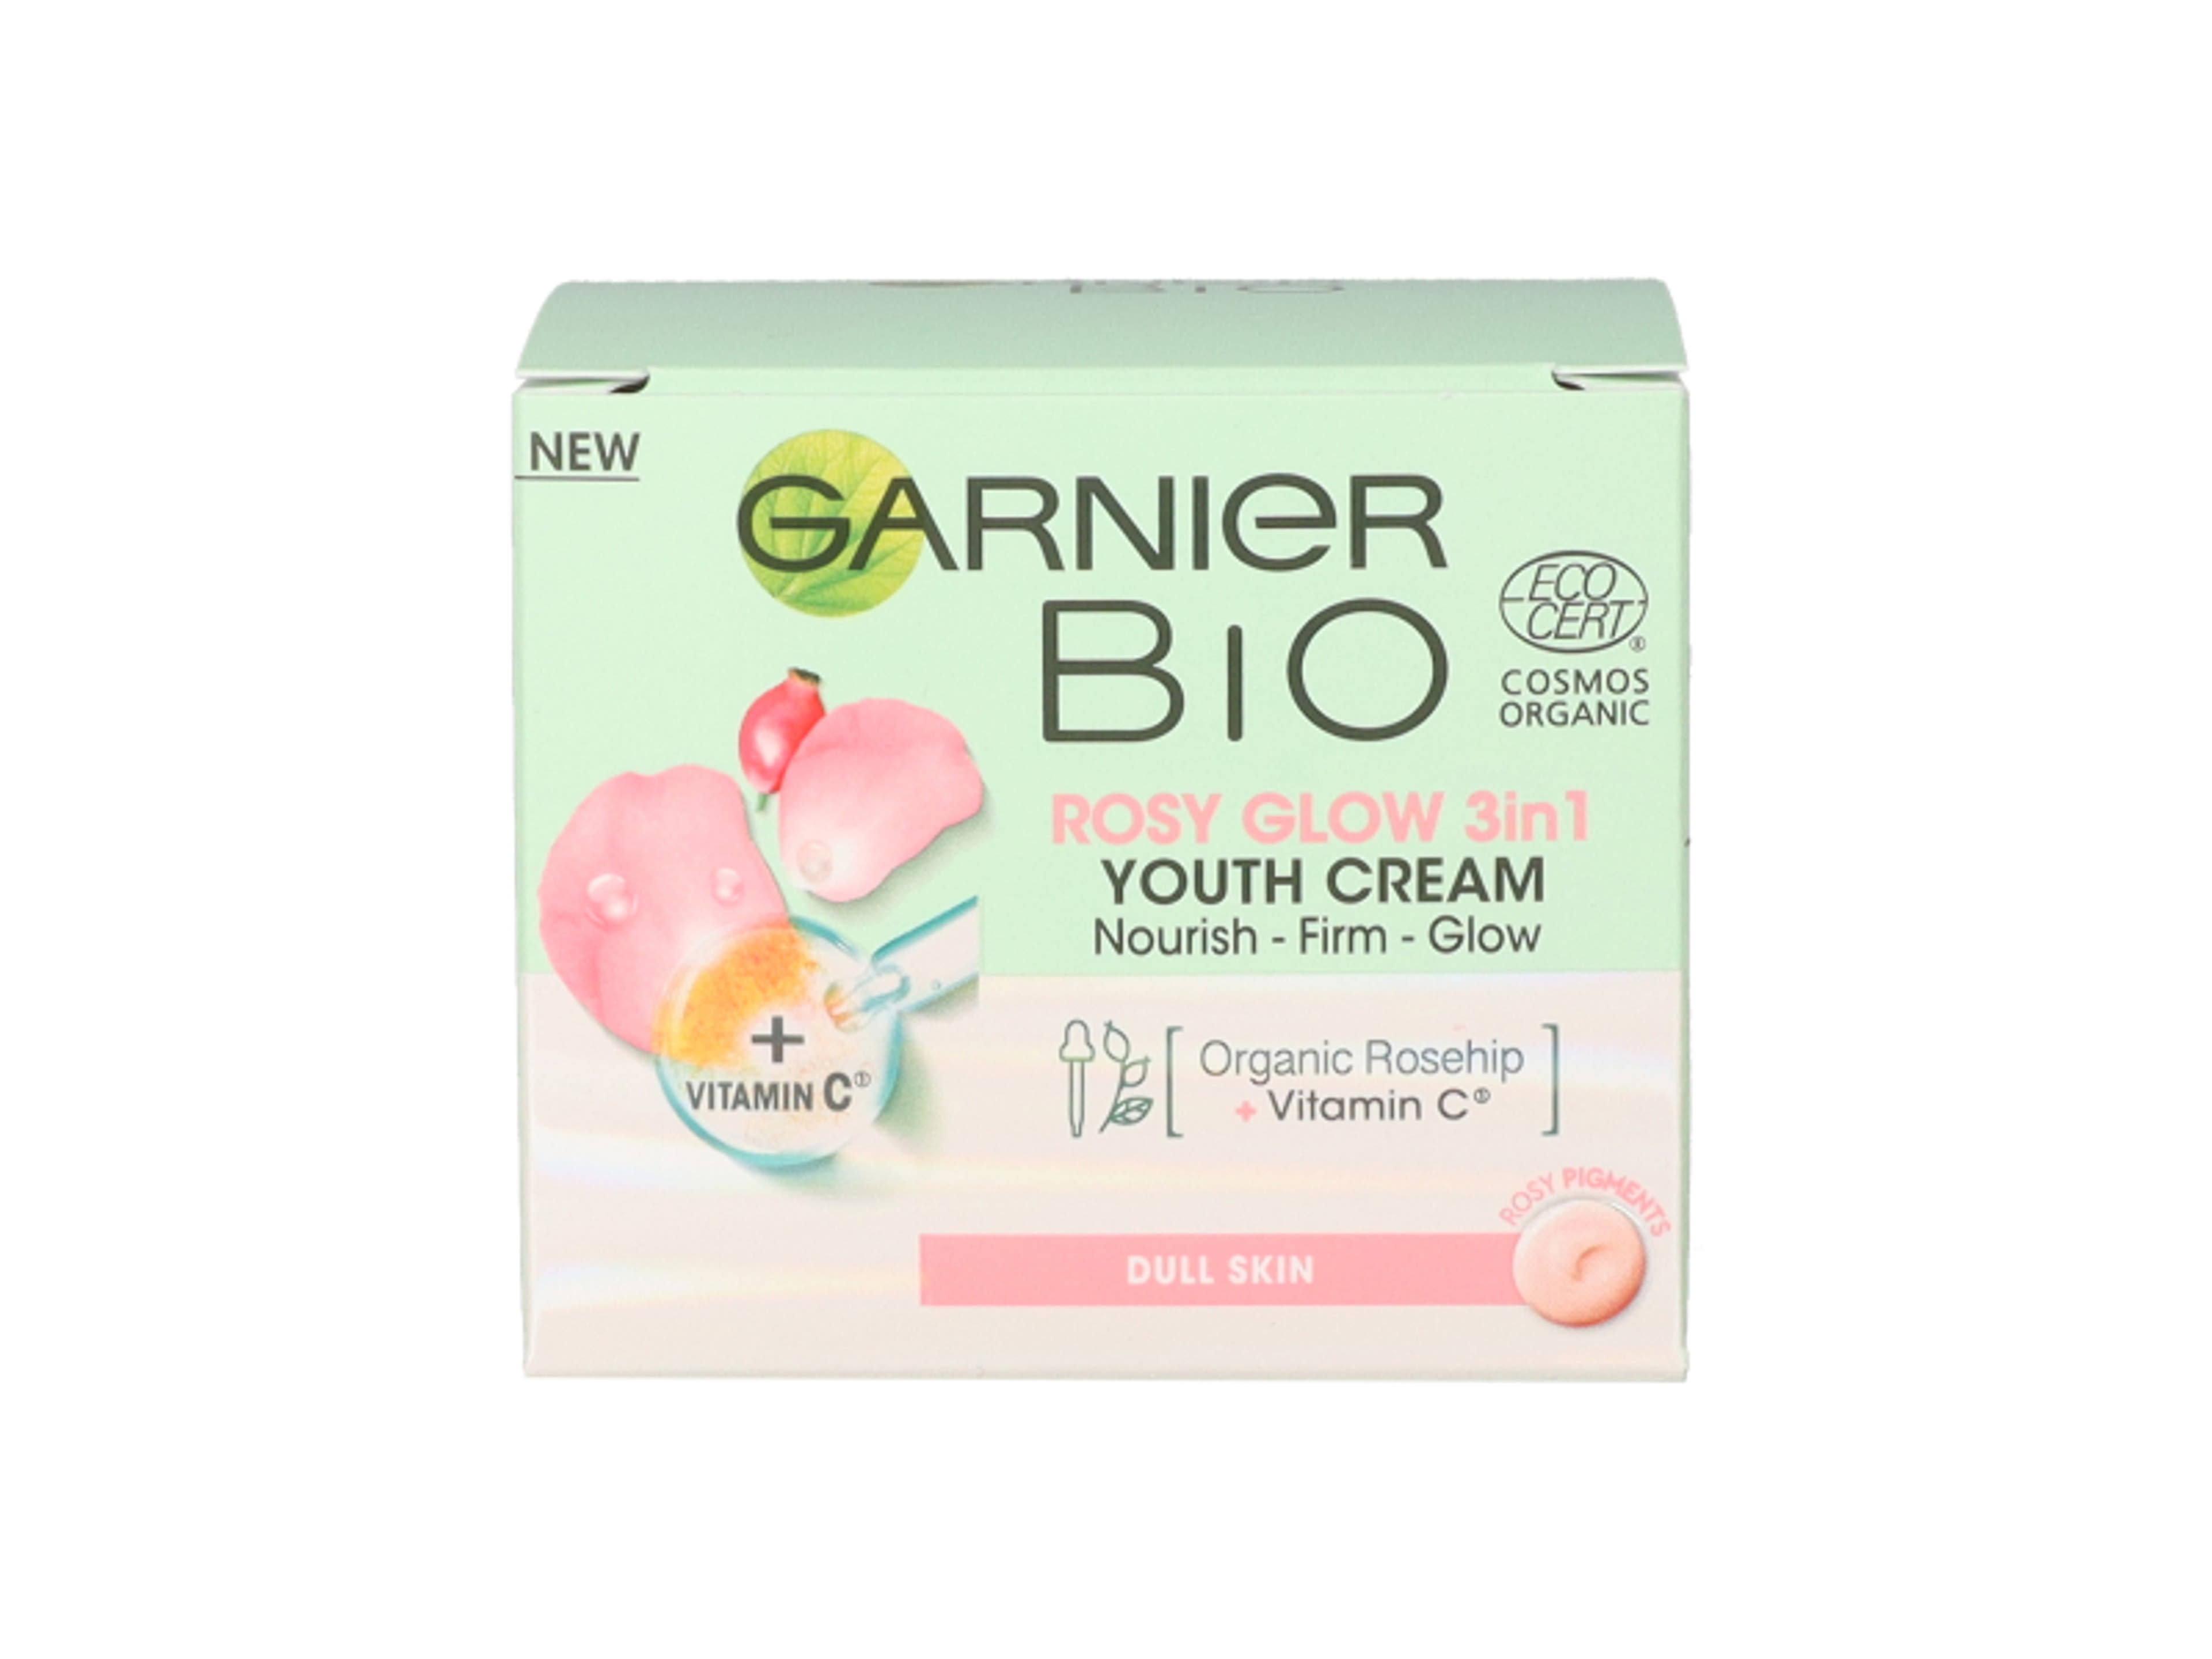 Garnier bio rosyglow 3in1 youth cream - 50 ml-1